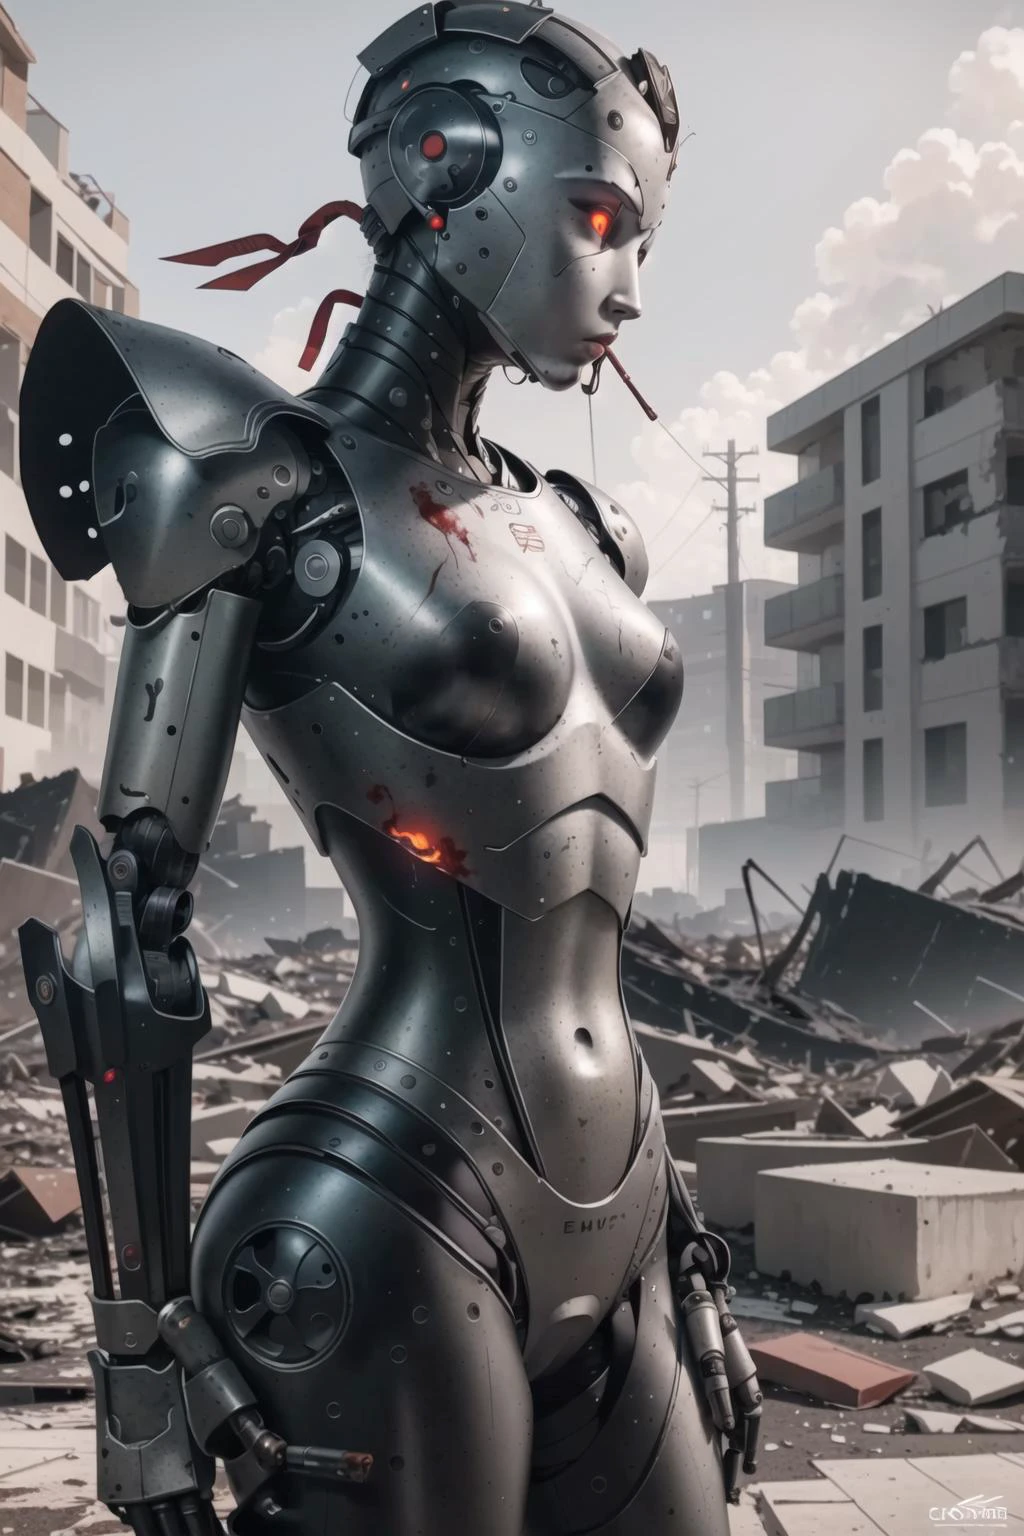 最高品質, 複雑なディテール,  (超リアルなデジタルイラストレーション),(傑作:1.1),


 血, 破壊された風景, デブリ, 瓦礫, 背景の火事, 煙, 切断された手足, 怖い雰囲気, humanoid ロボット, ロボット, ロボット 関節, 関節, ヘルメット, 鎧, ロボット girl,